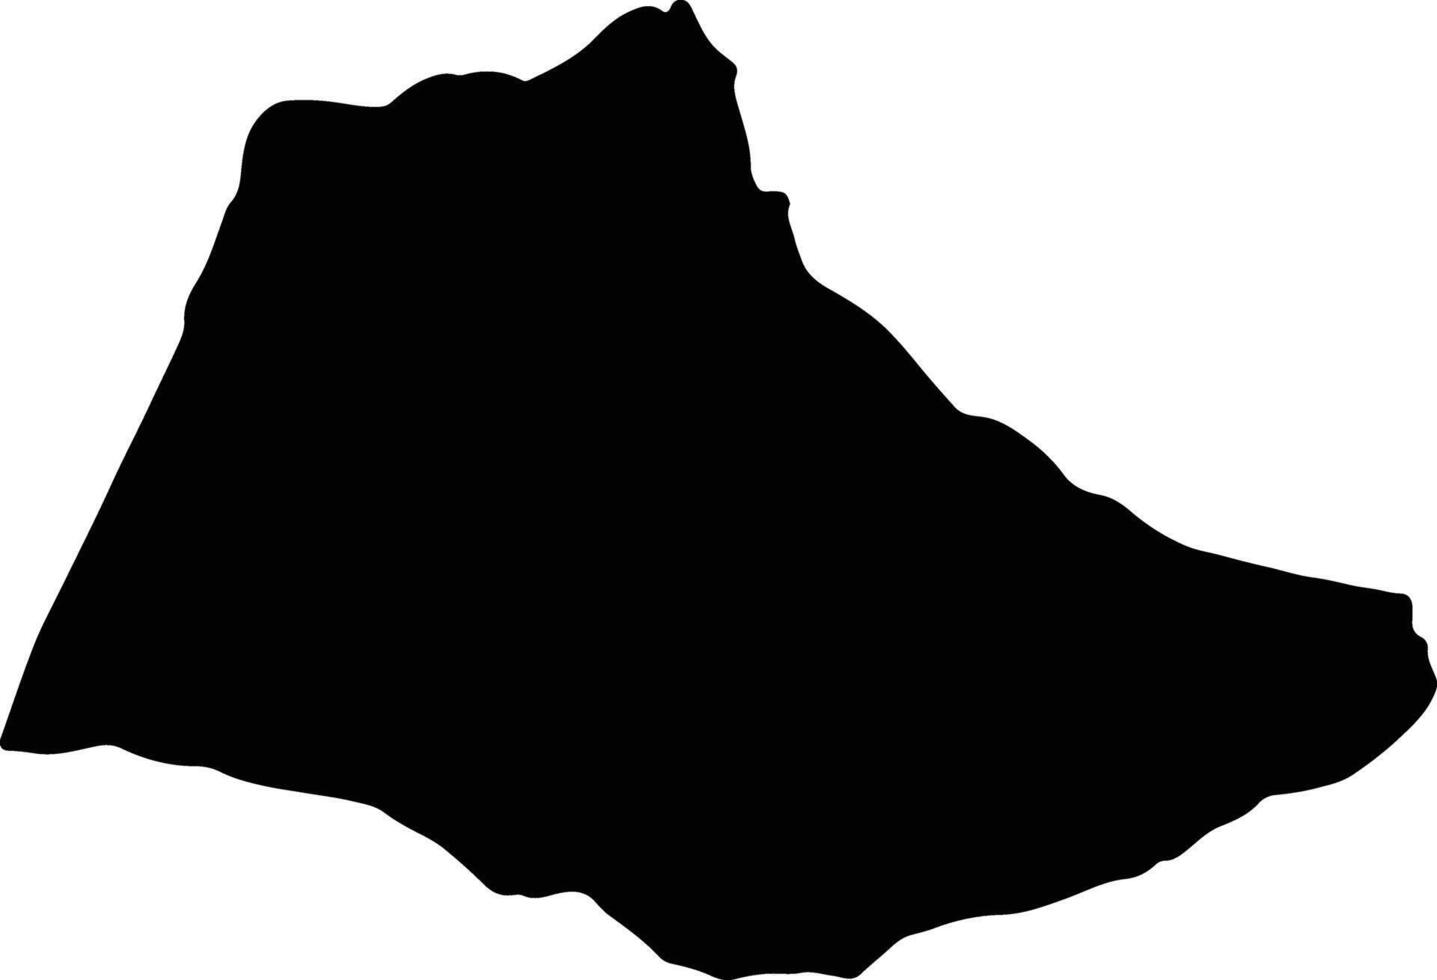 tanger - tetouan Marocco silhouette carta geografica vettore